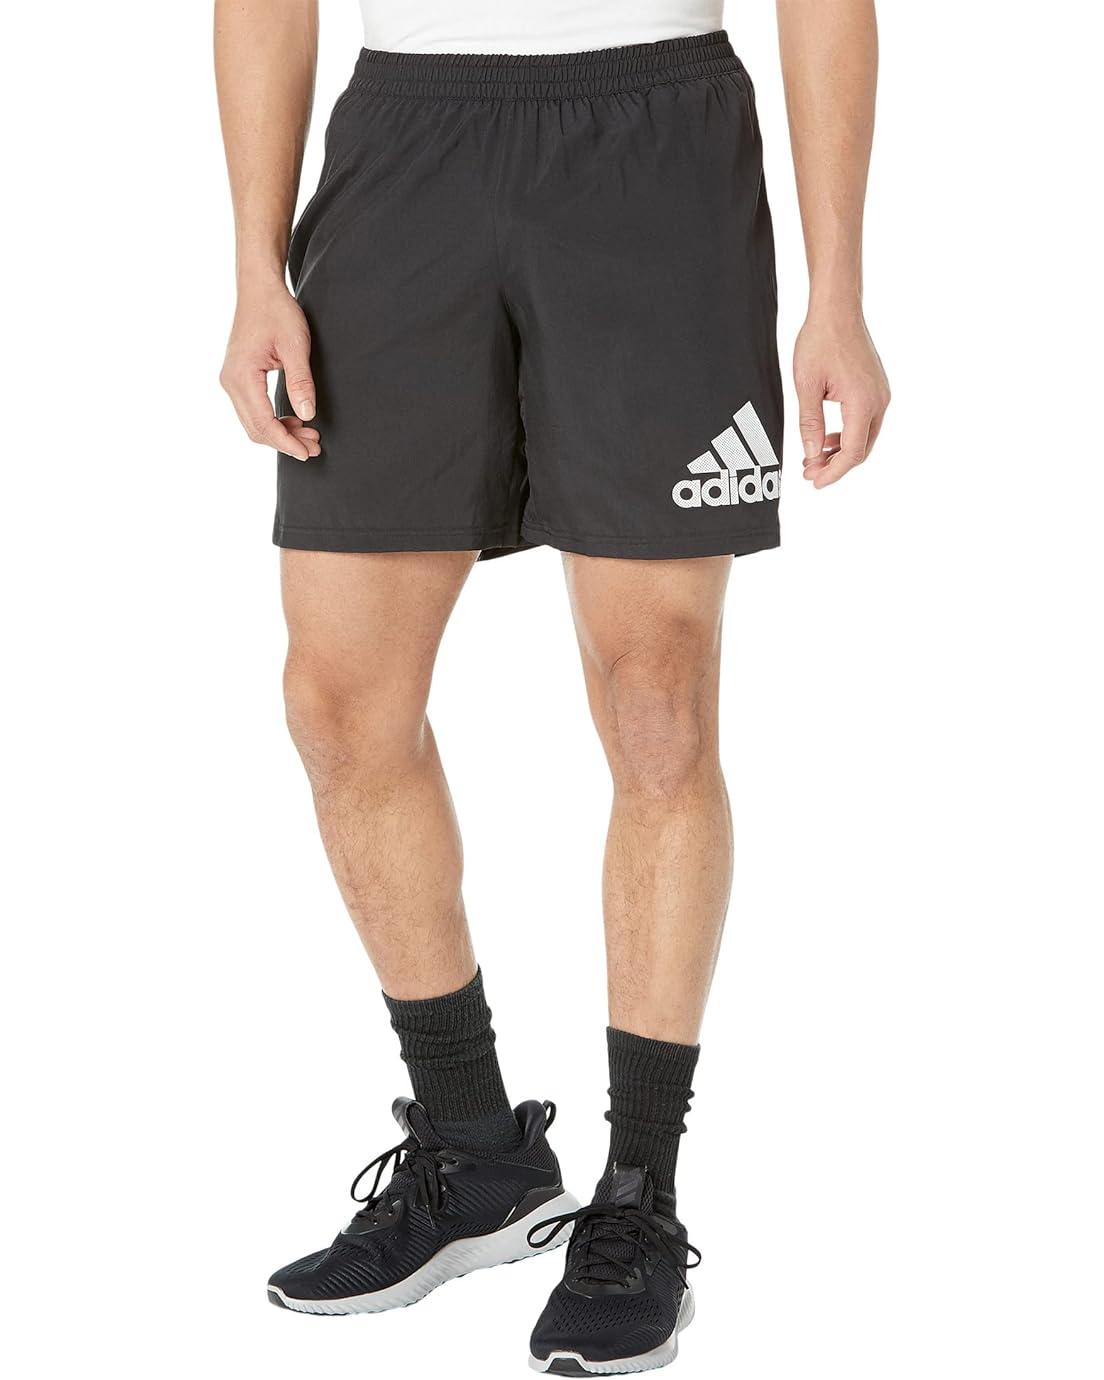 Adidas Run It 7 Shorts